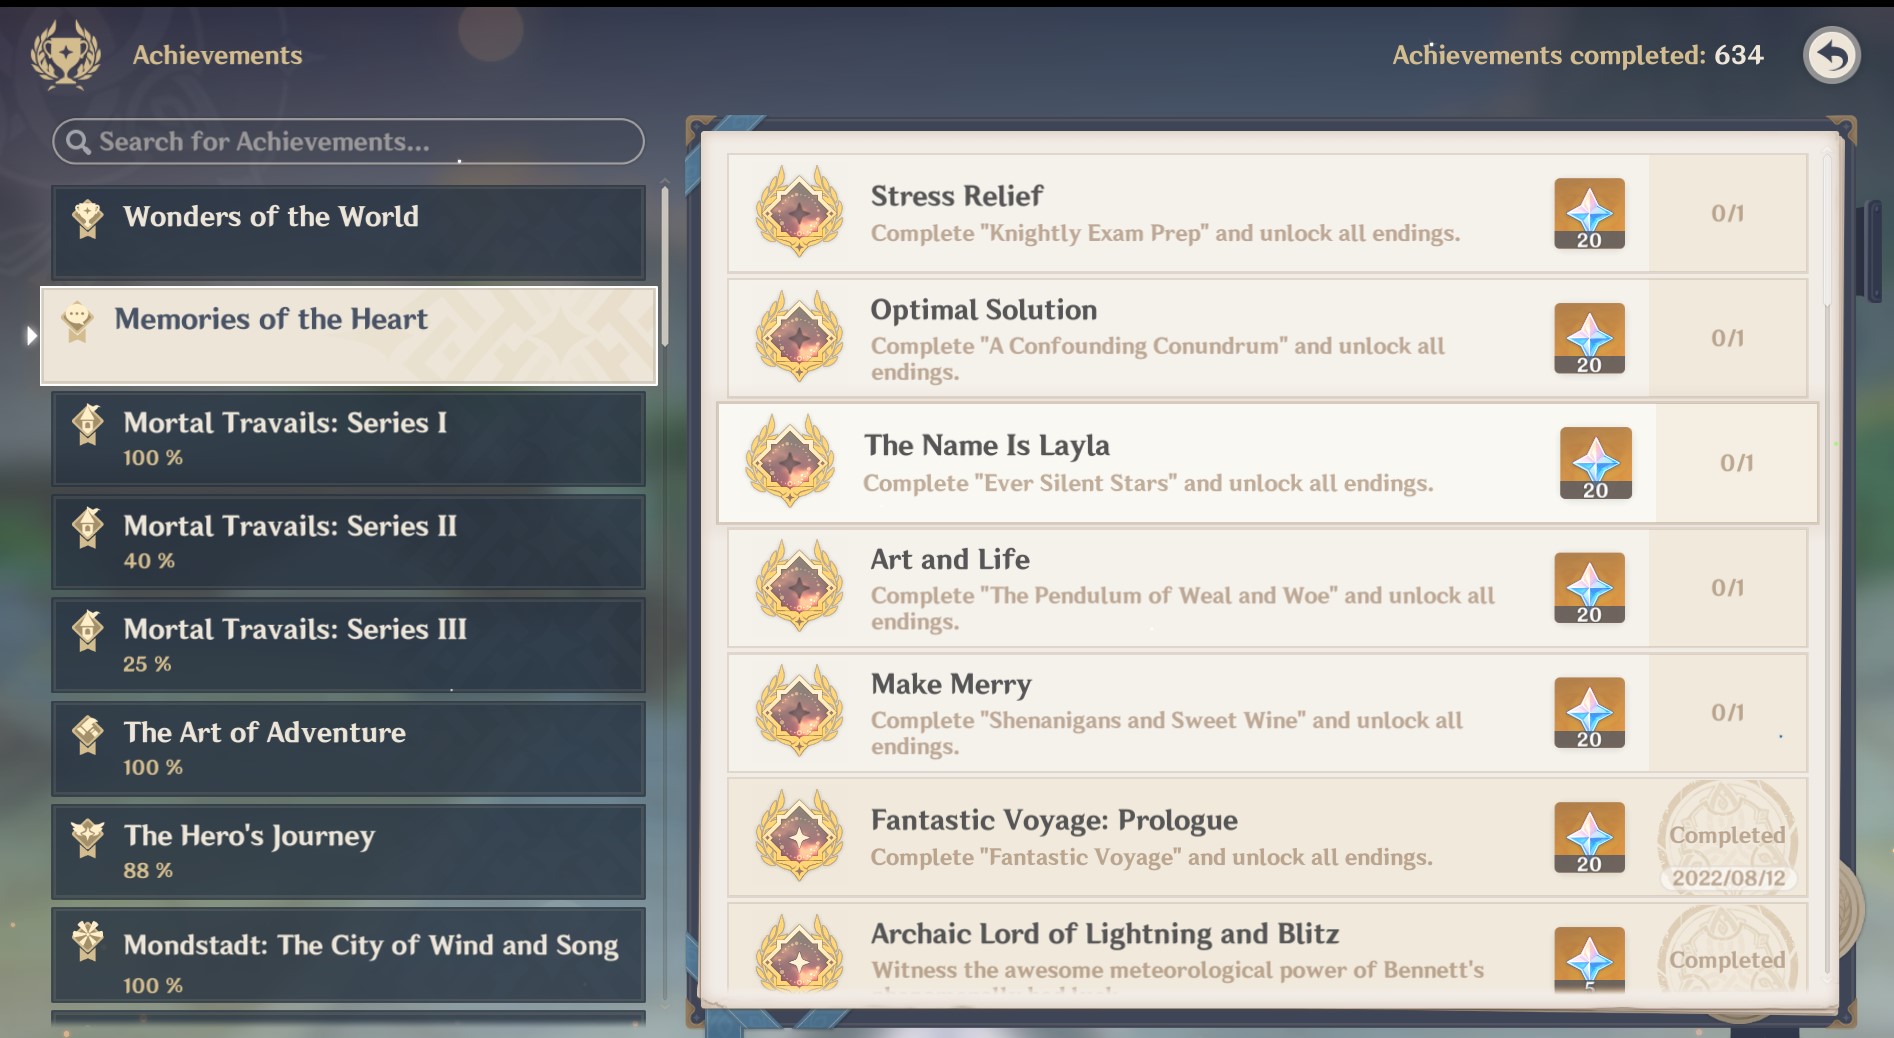 The achievements menu